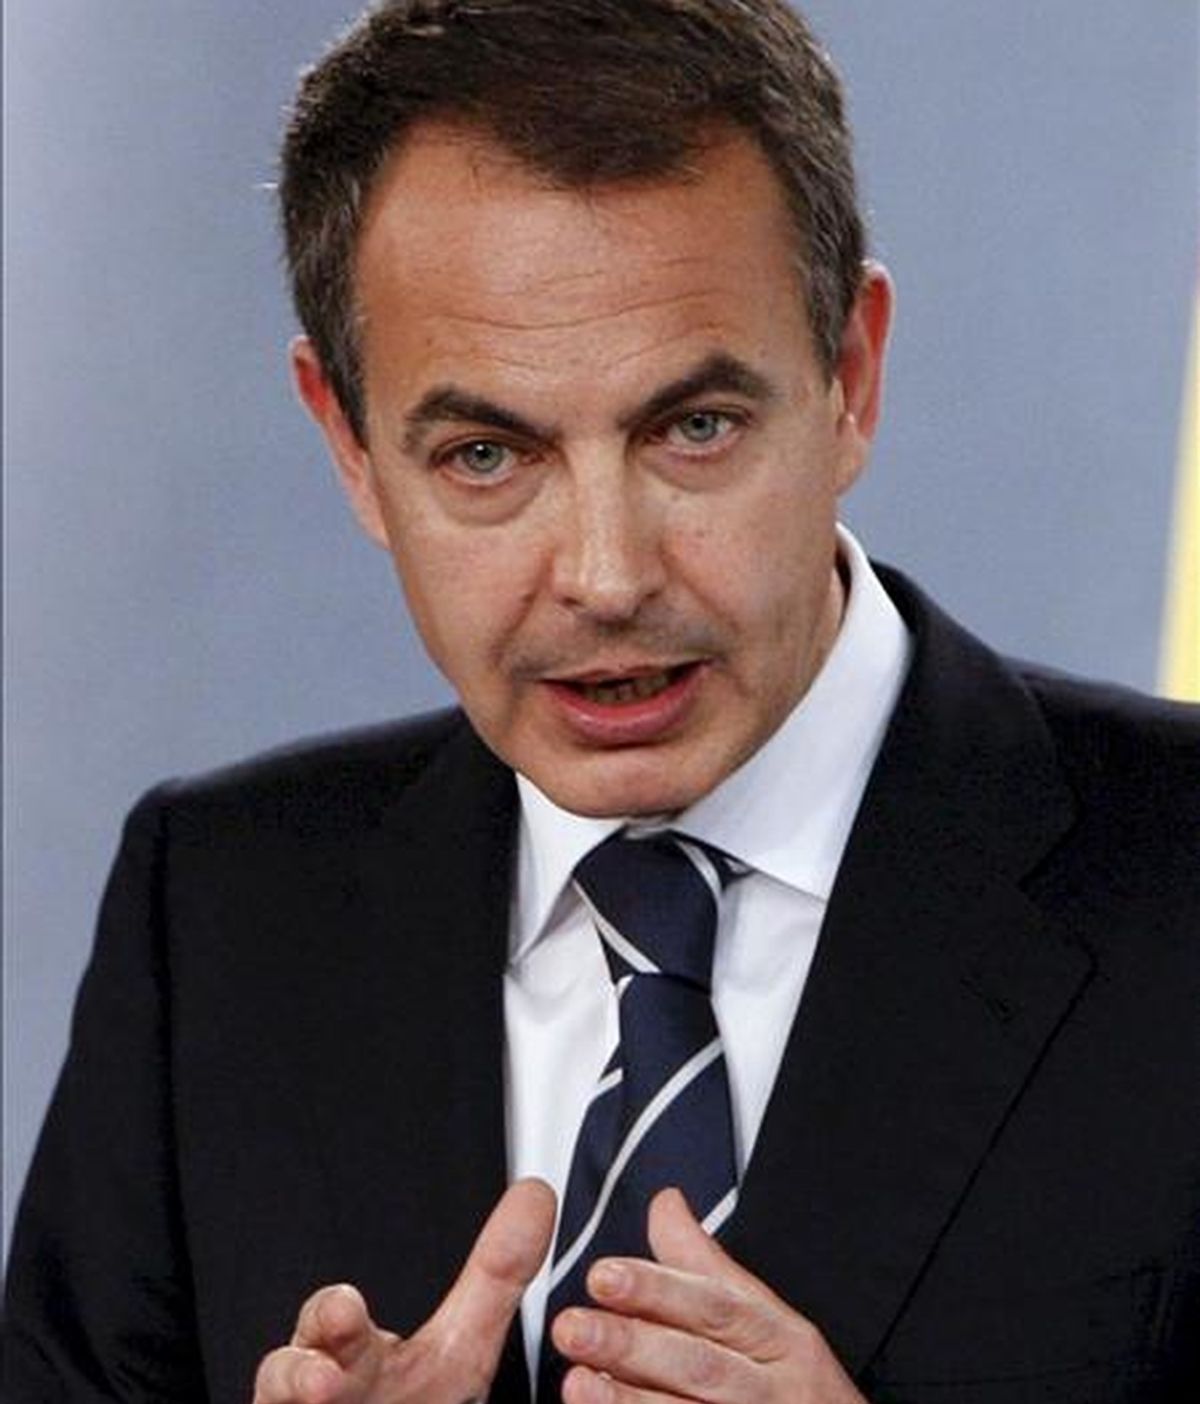 El presidente del Gobierno, José Luis Rodríguez Zapatero, acusa a Mayor Oreja de haber alejado a España del corazón de Europa. En la imagen, Zapatero durante una rueda de prensa. EFE/Archivo